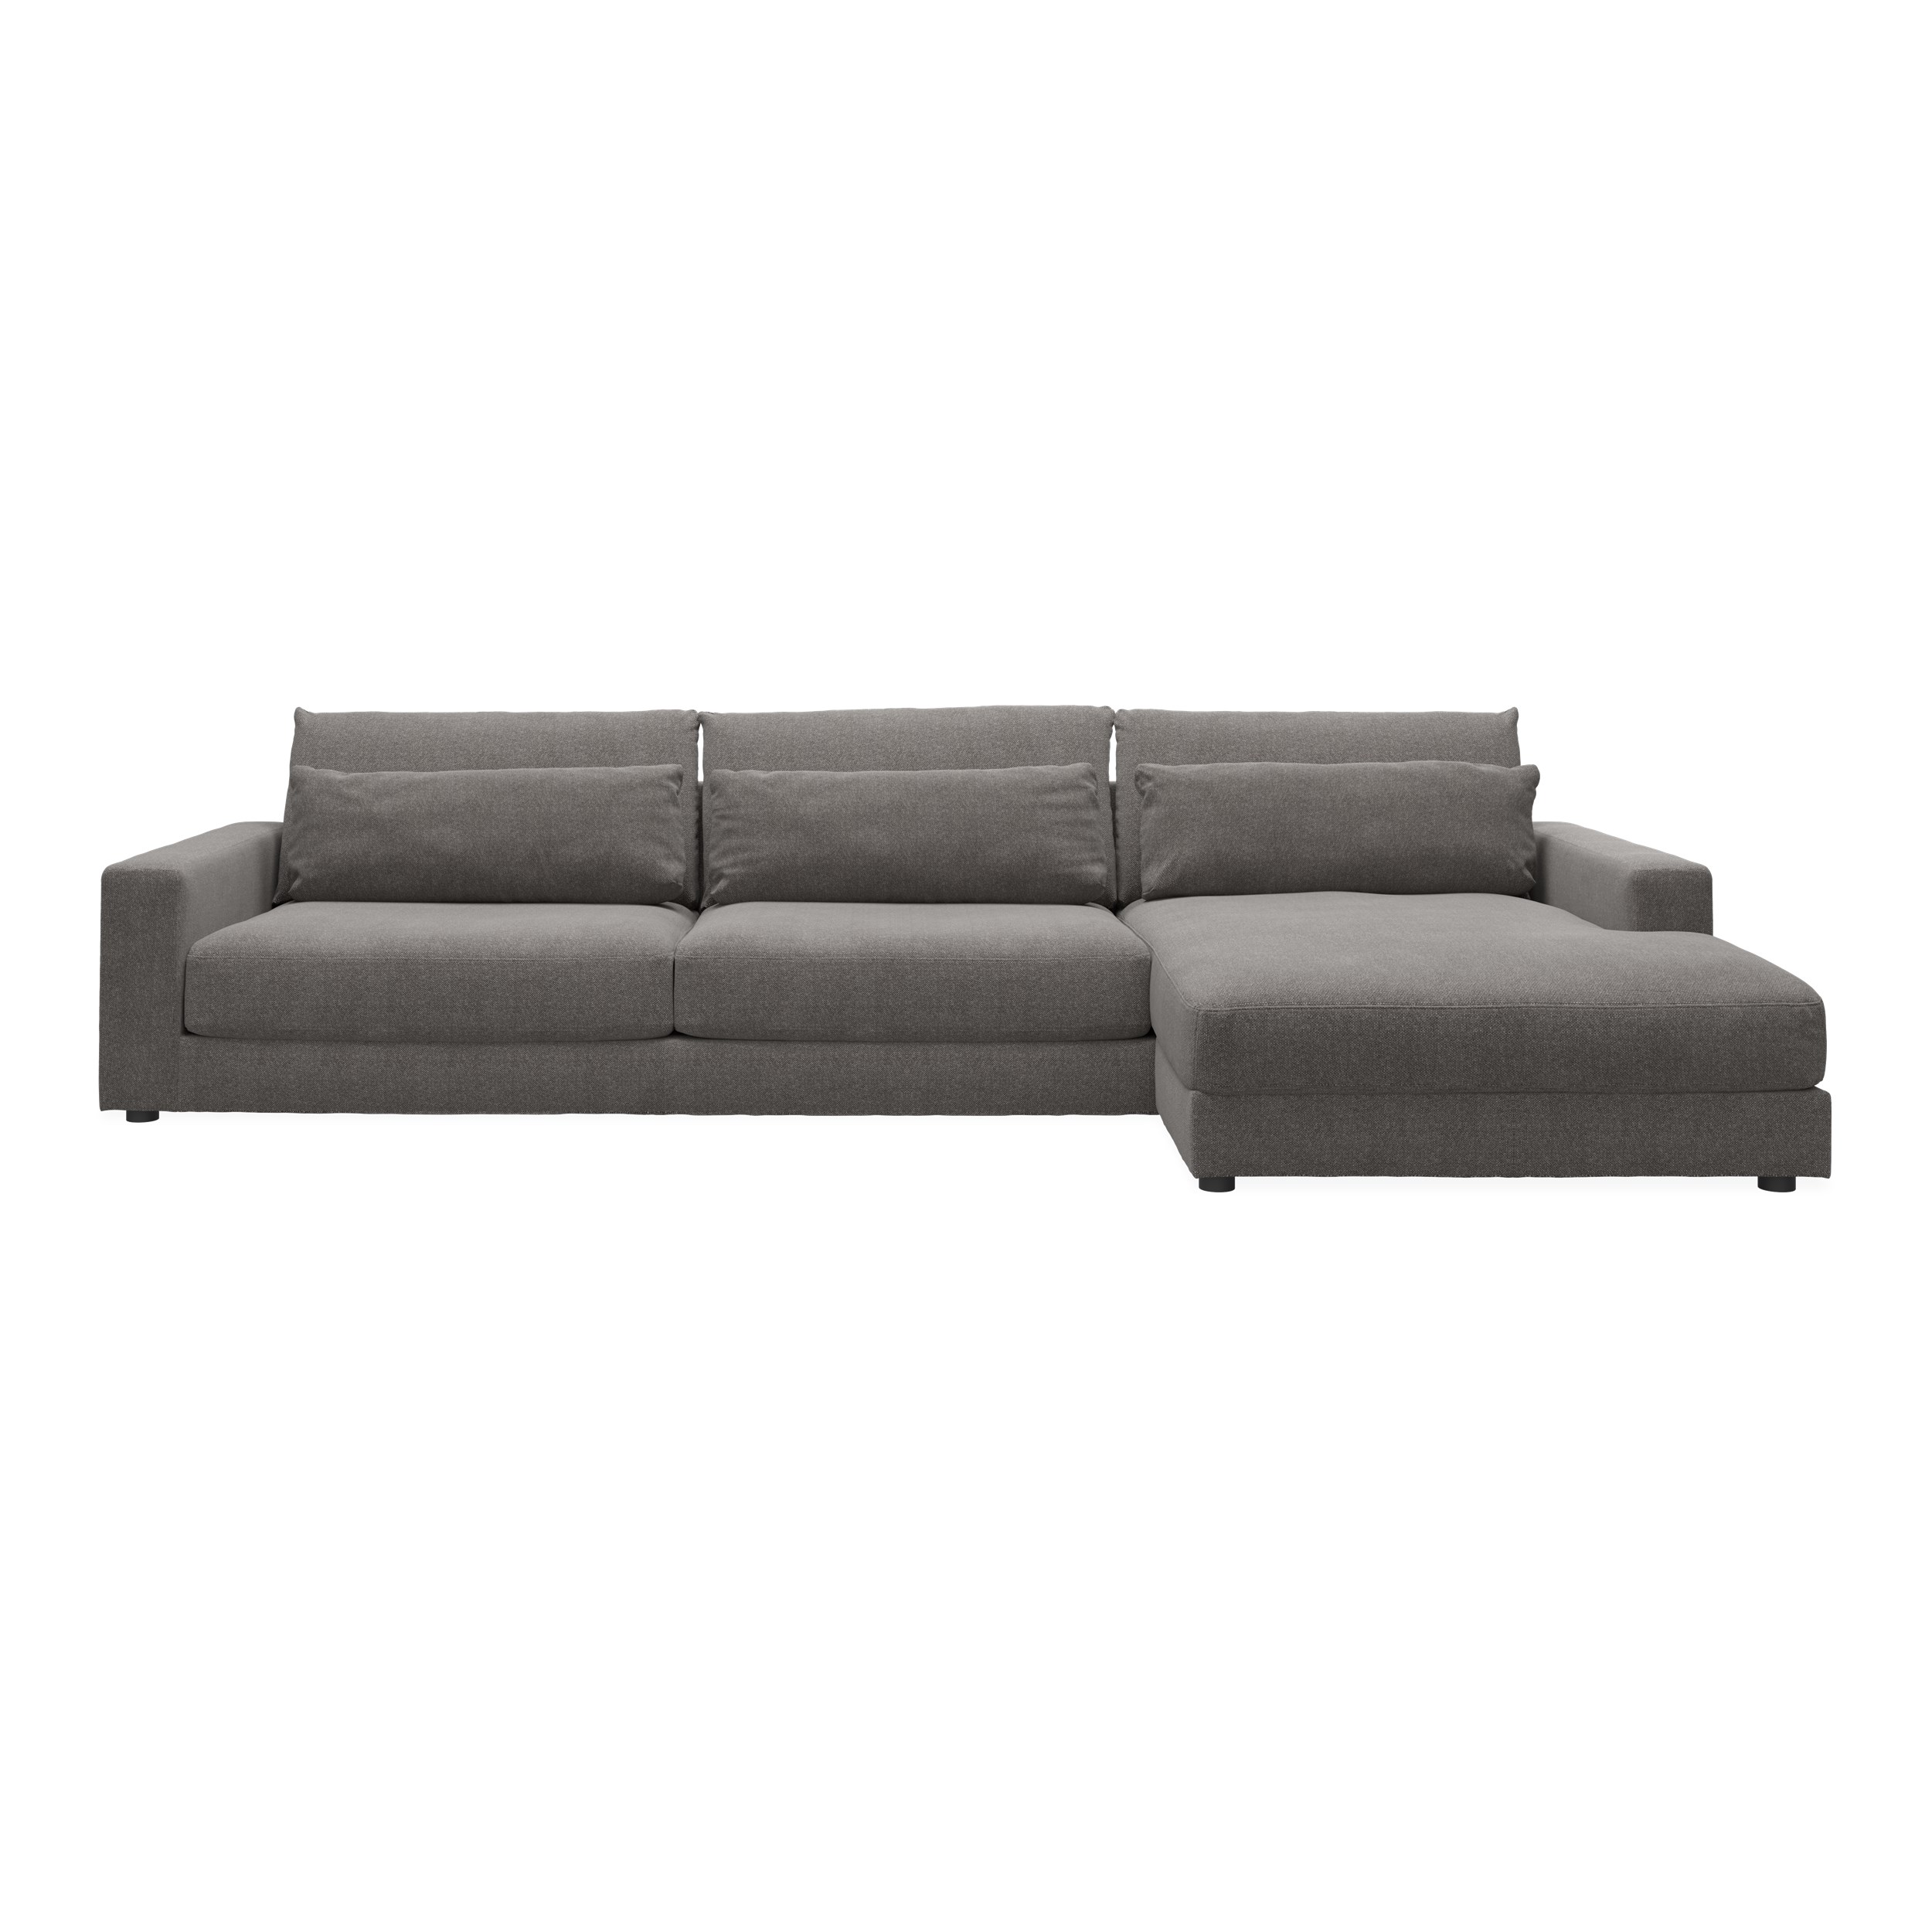 Halmstad högervänd soffa med schäslong - Rate 108 Wood textil och ben i svart plast